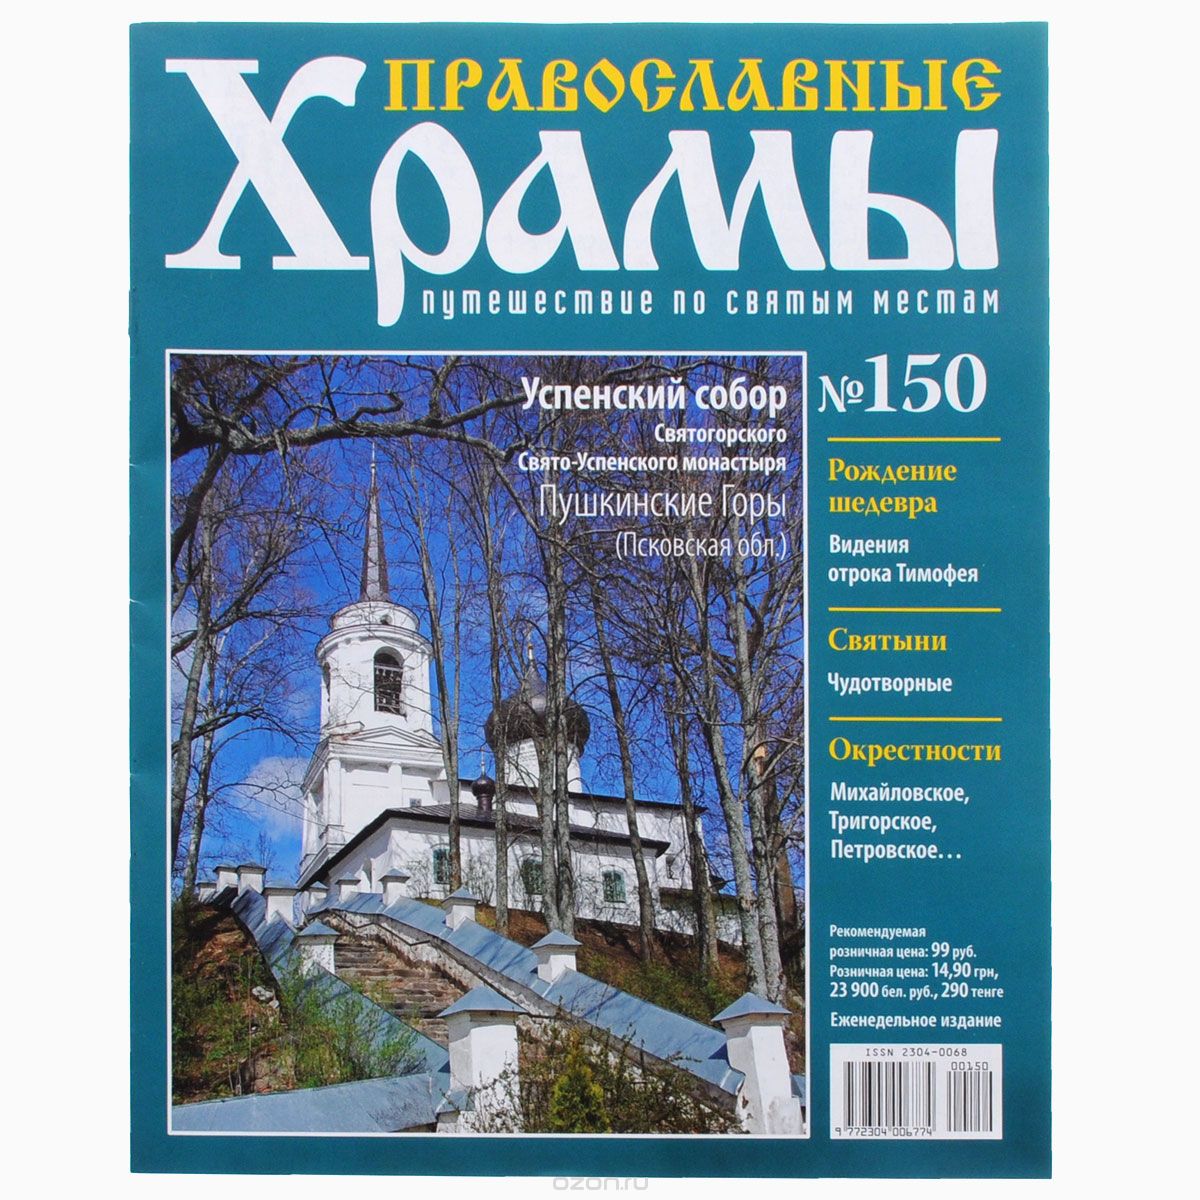 Журнал "Православные храмы. Путешествие по святым местам" № 150